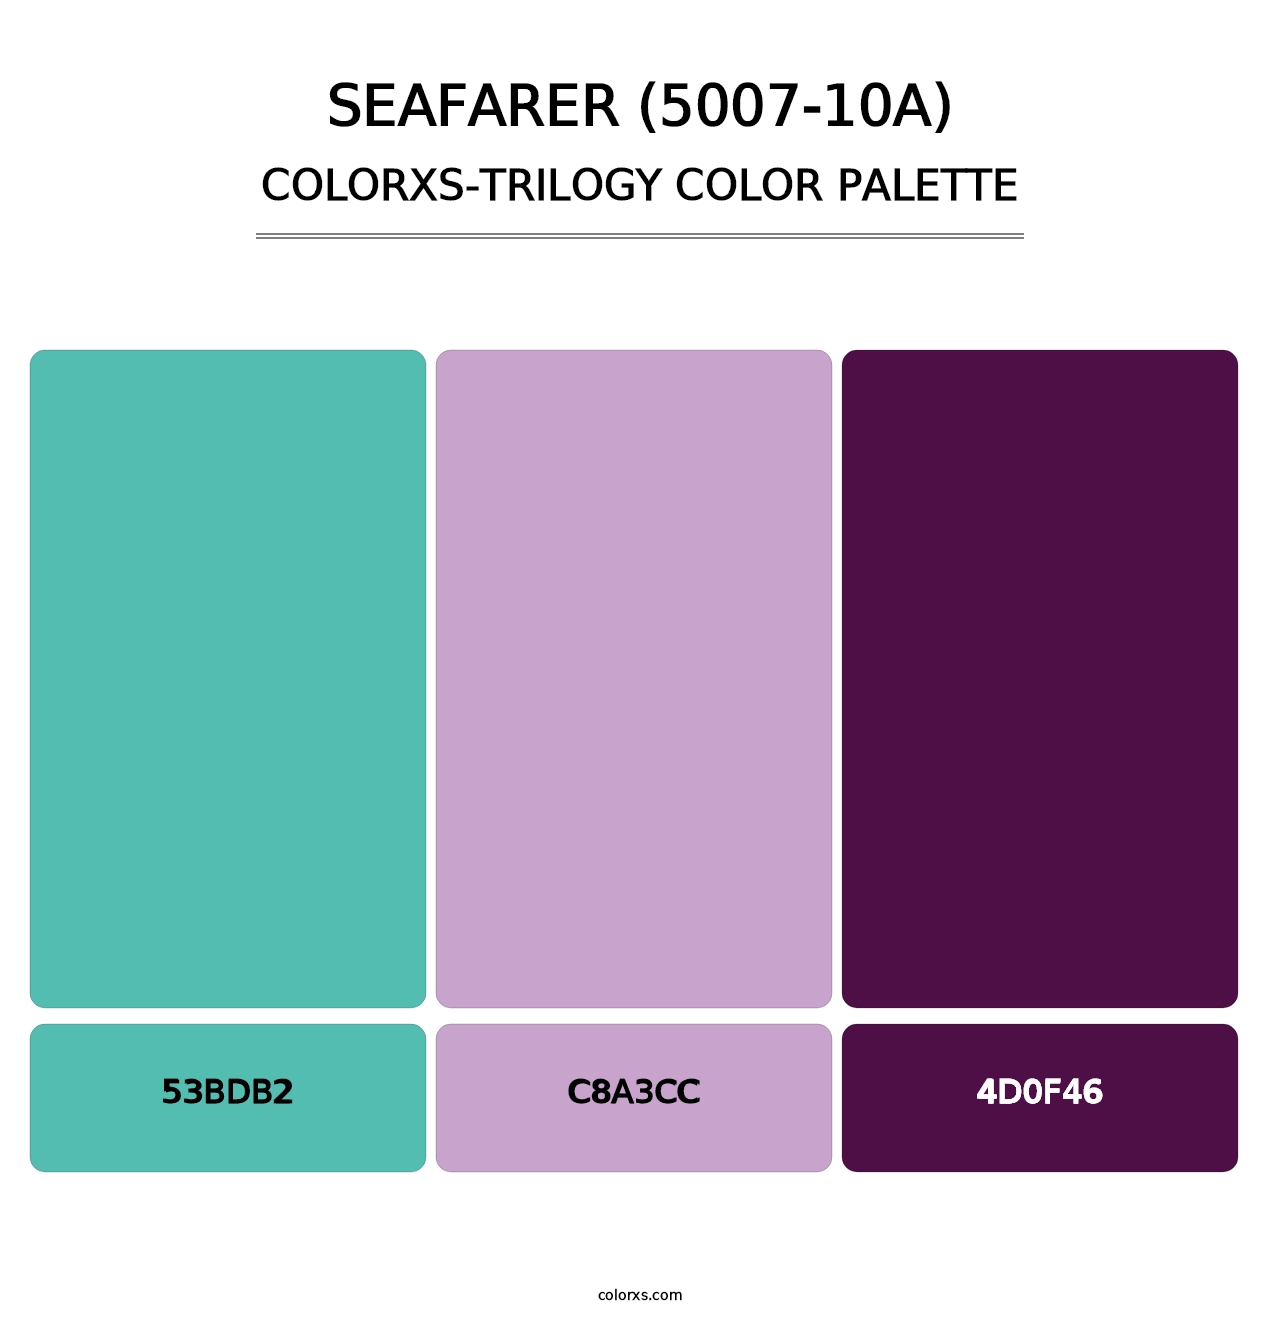 Seafarer (5007-10A) - Colorxs Trilogy Palette